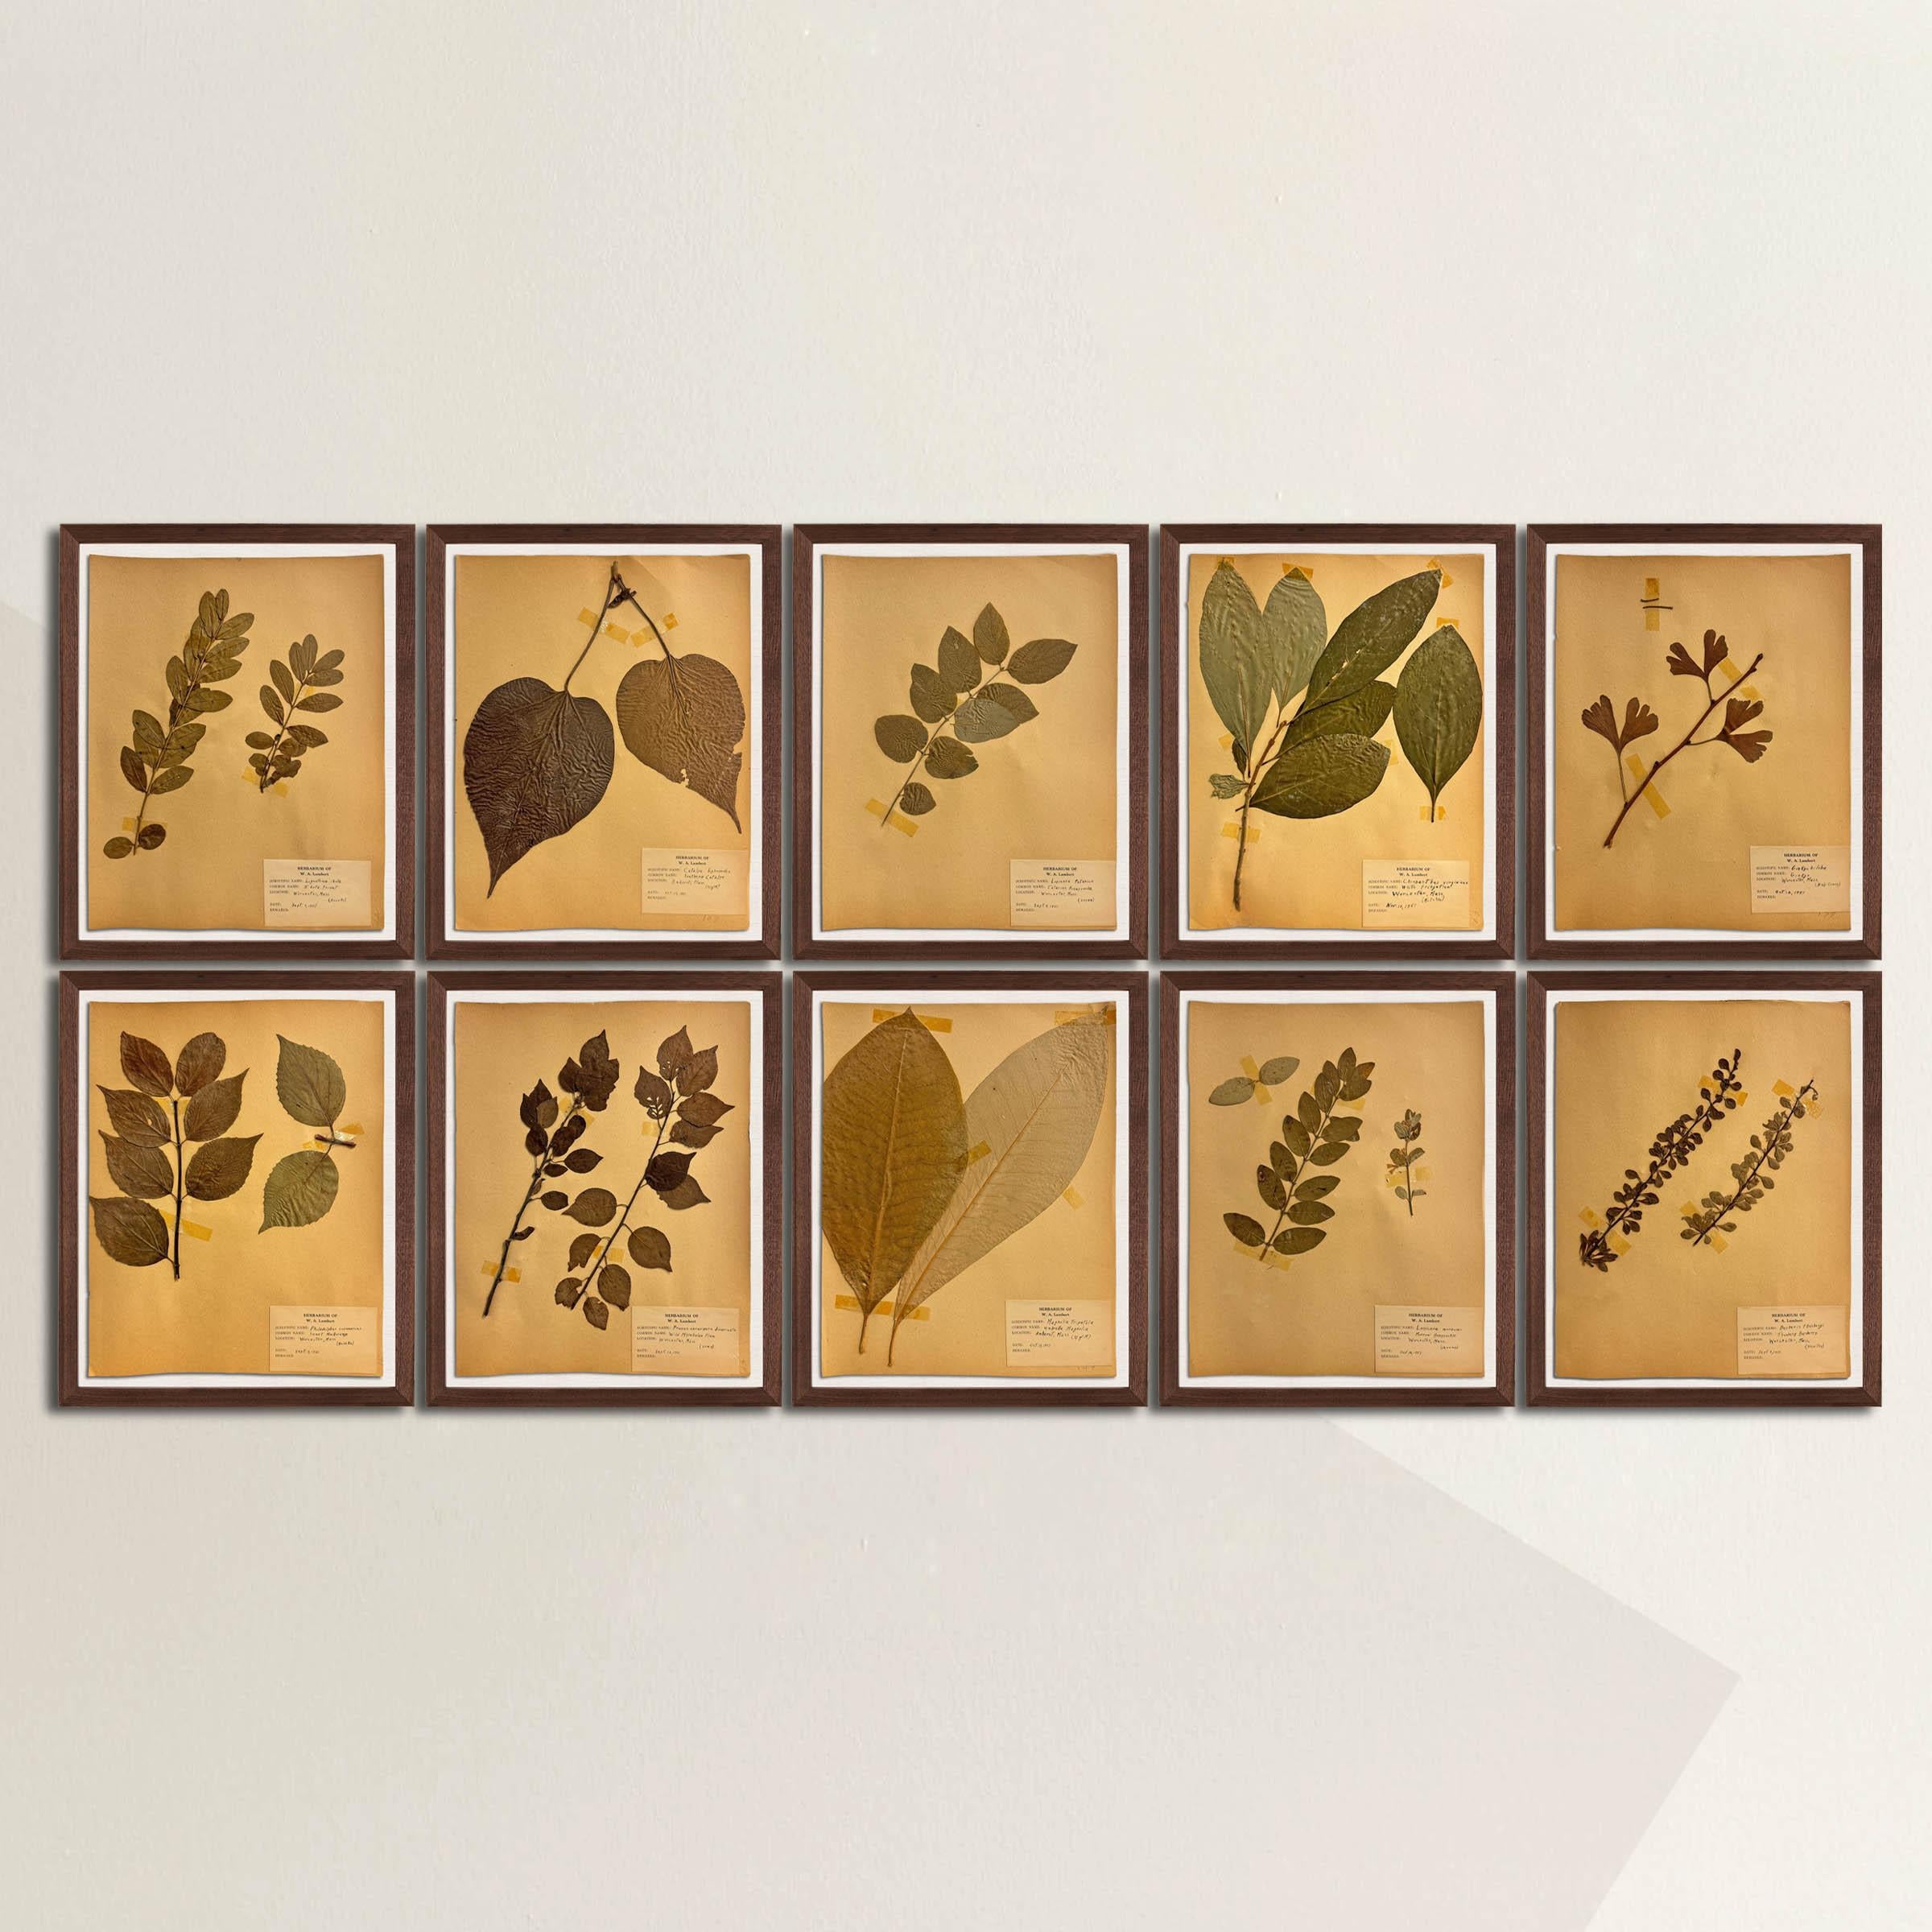 Collectional présente une collection de dix spécimens botaniques d'herbiers américains encadrés, méticuleusement rassemblés en 1951 à Amherst et Worcester, MA. Parmi ces spécimens figurent des variétés classiques de jardins telles que le ginkgo, le